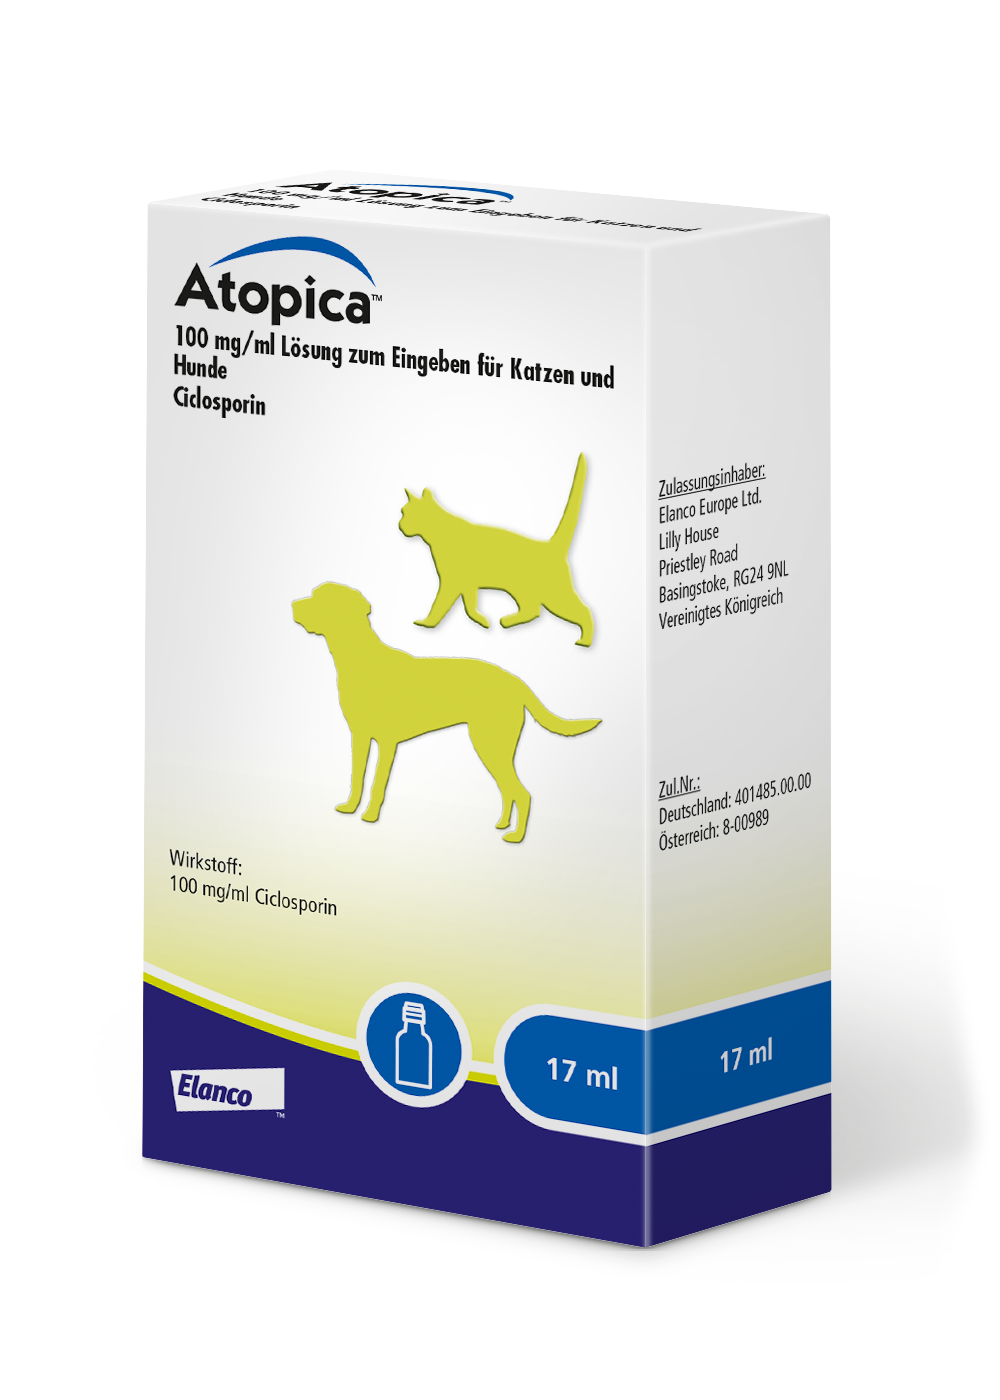 WDT - Tierarztunternehmen. Atopica® 100 mg/ml Lösung zum Eingeben für Katzen und Hunde